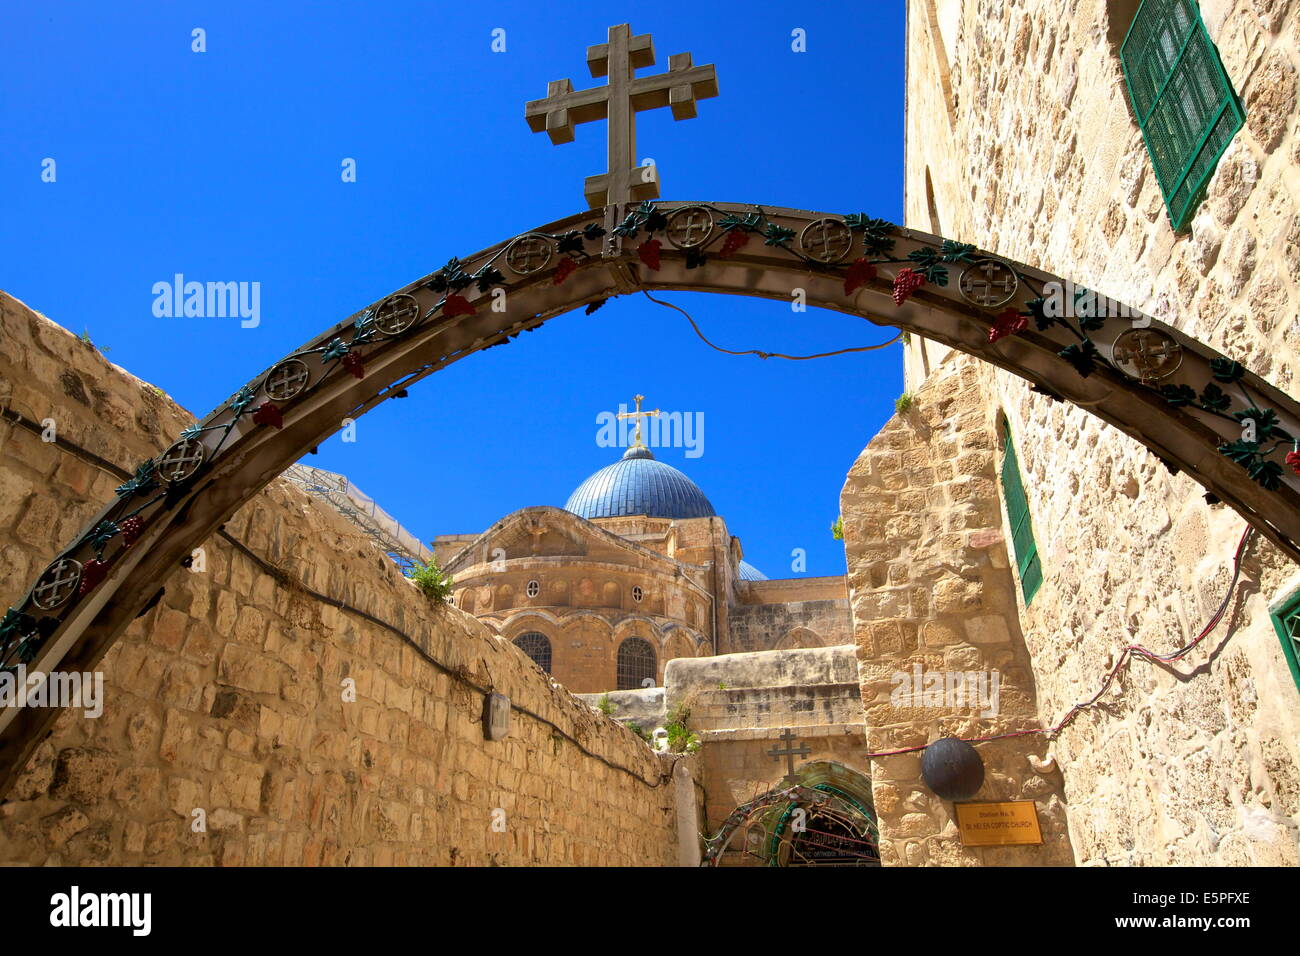 Monastère éthiopien et l'église du Saint-Sépulcre, Vieille Ville, site du patrimoine mondial de l'UNESCO, Jérusalem, Israël, Moyen Orient Banque D'Images